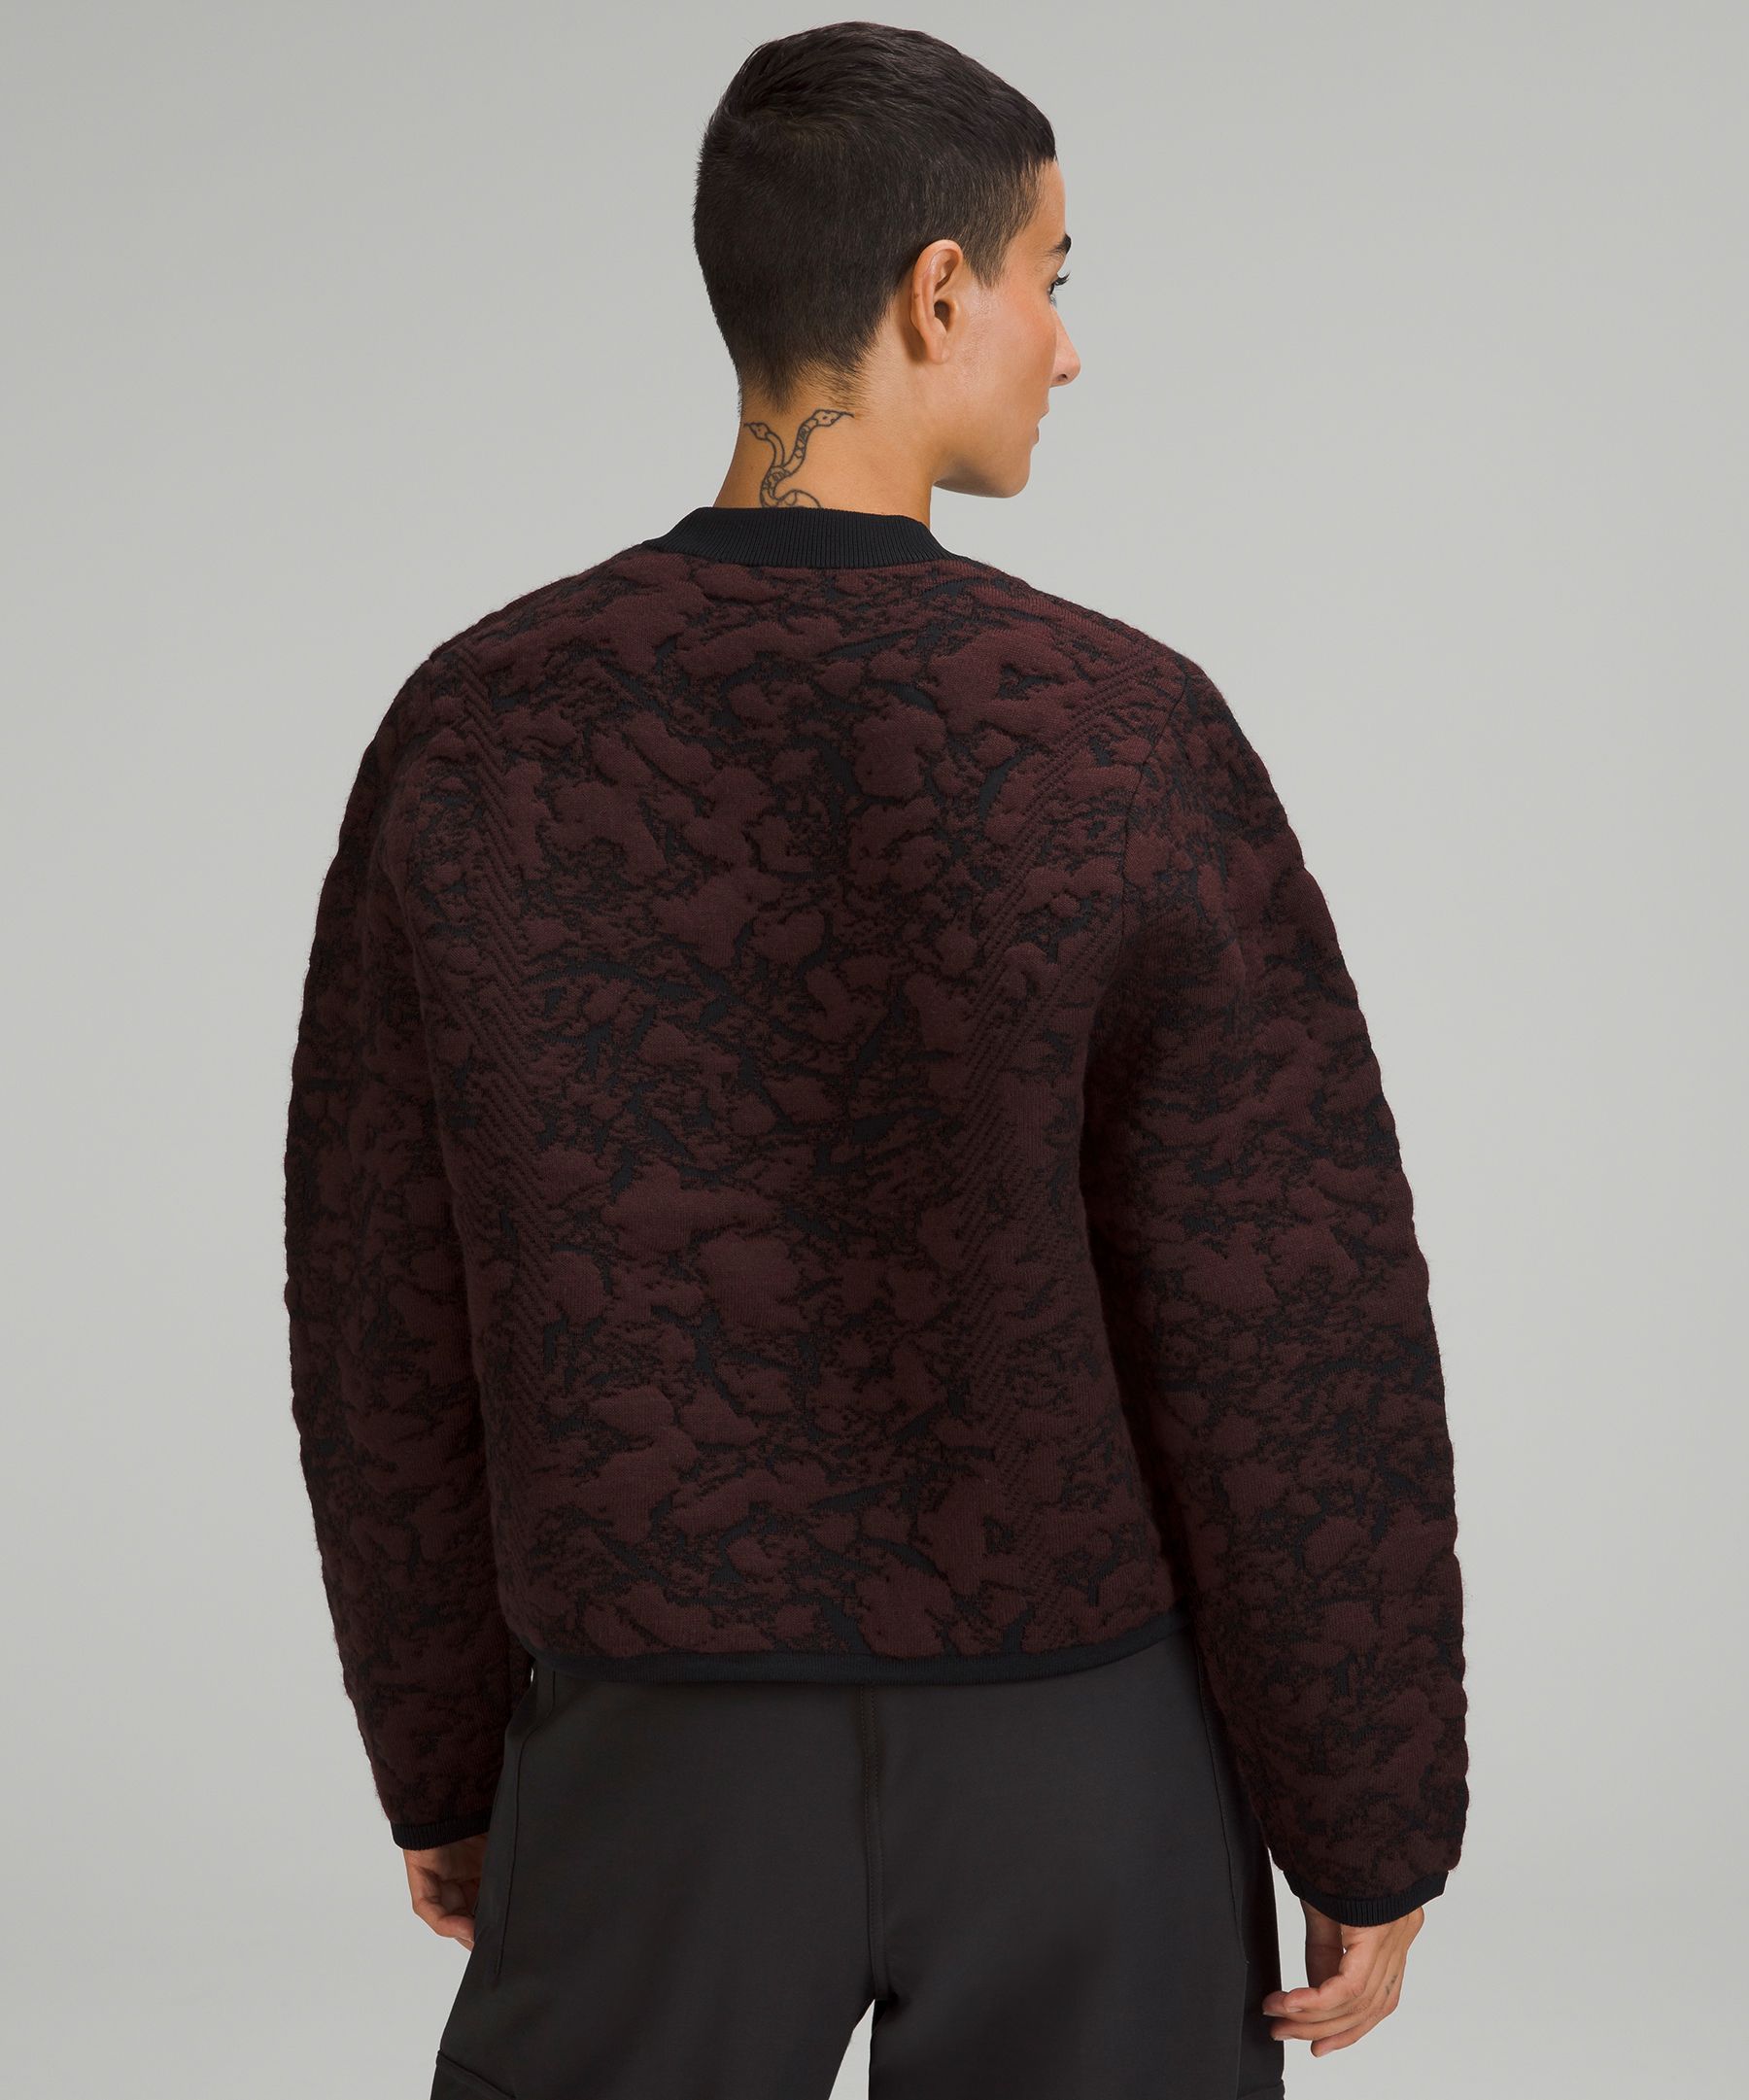 Shop Lululemon Jacquard Multi-texture Crewneck Sweater